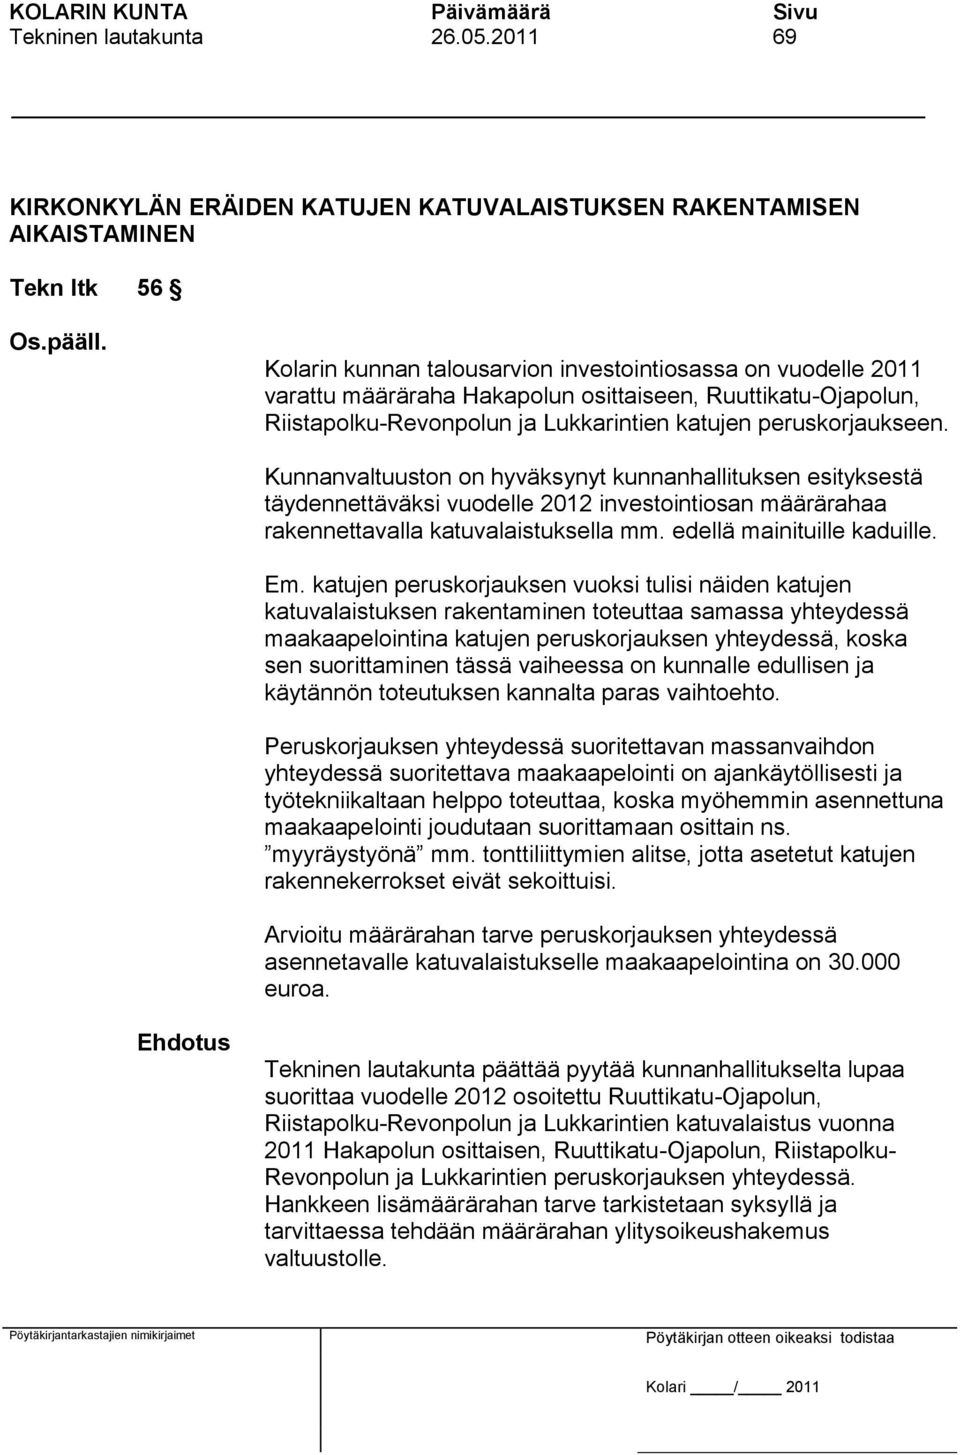 Kunnanvaltuuston on hyväksynyt kunnanhallituksen esityksestä täydennettäväksi vuodelle 2012 investointiosan määrärahaa rakennettavalla katuvalaistuksella mm. edellä mainituille kaduille. Em.